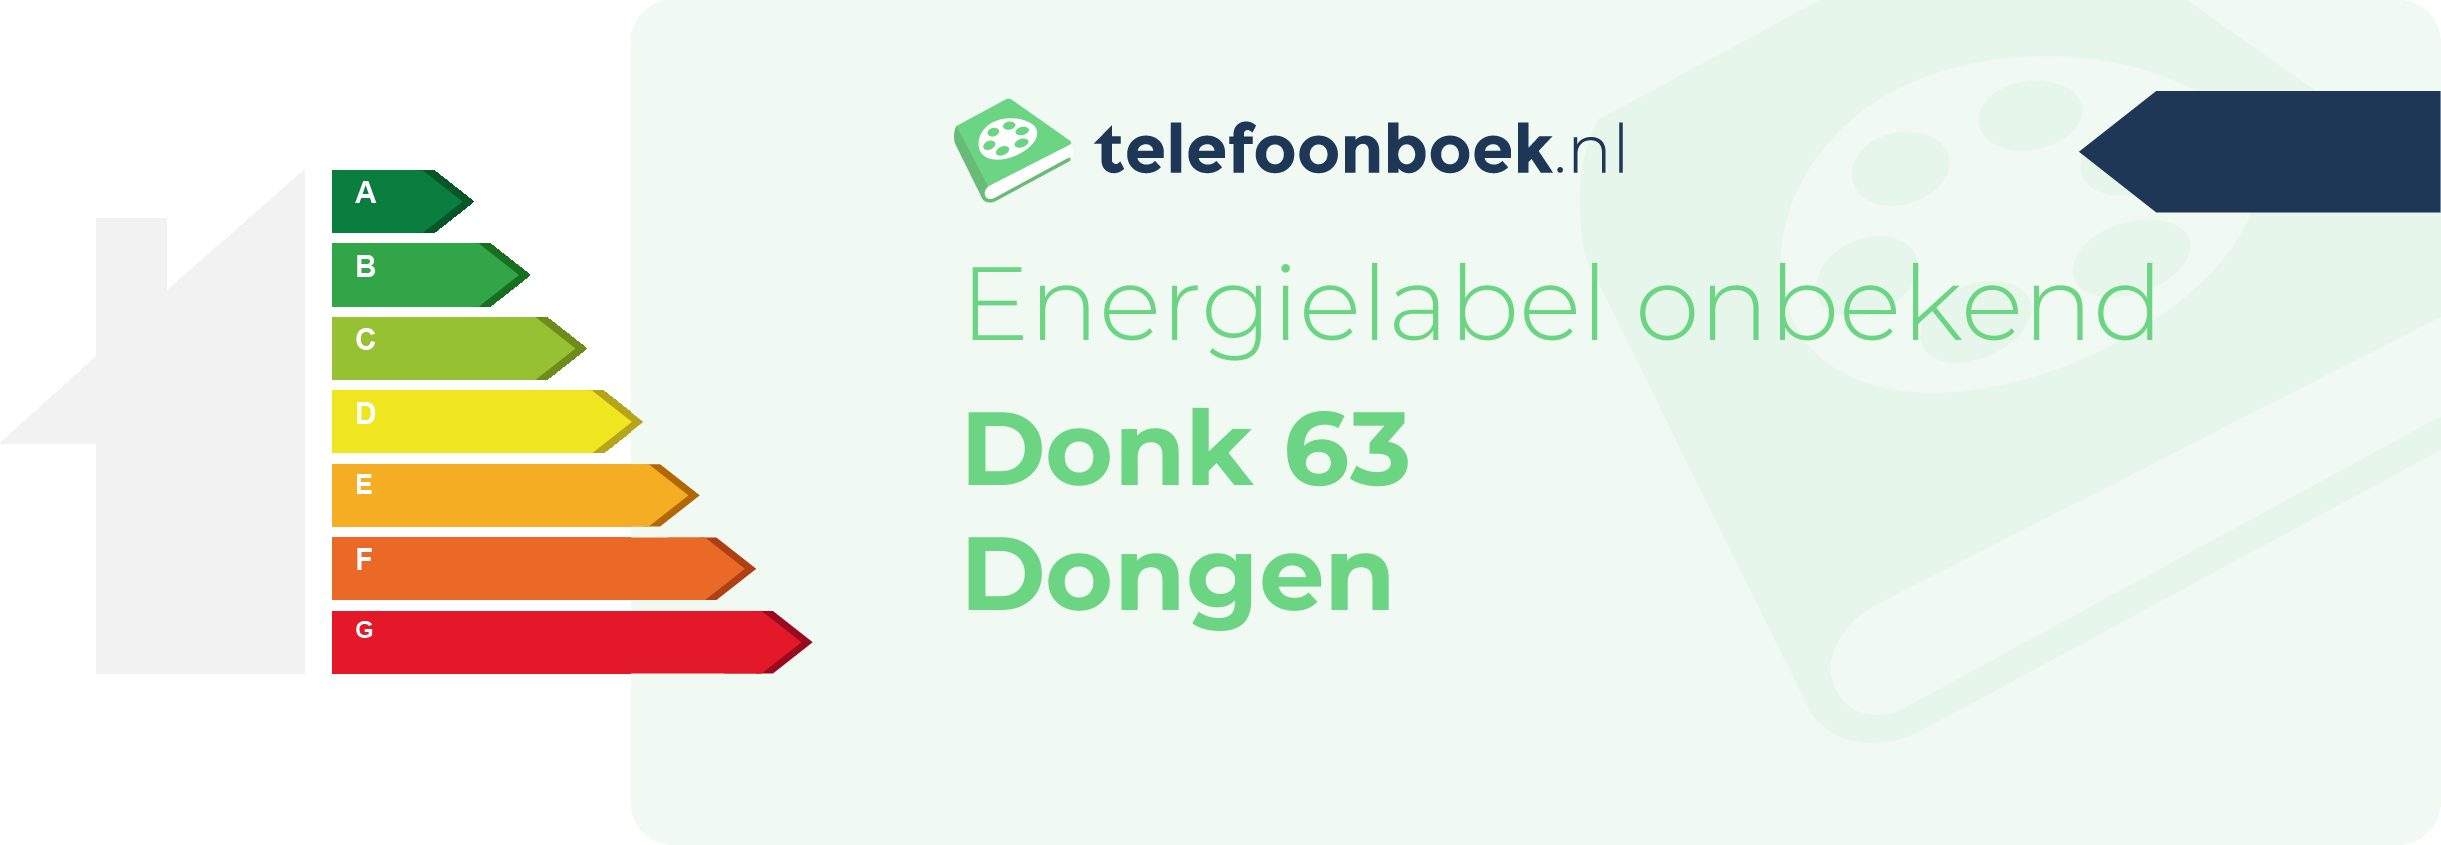 Energielabel Donk 63 Dongen